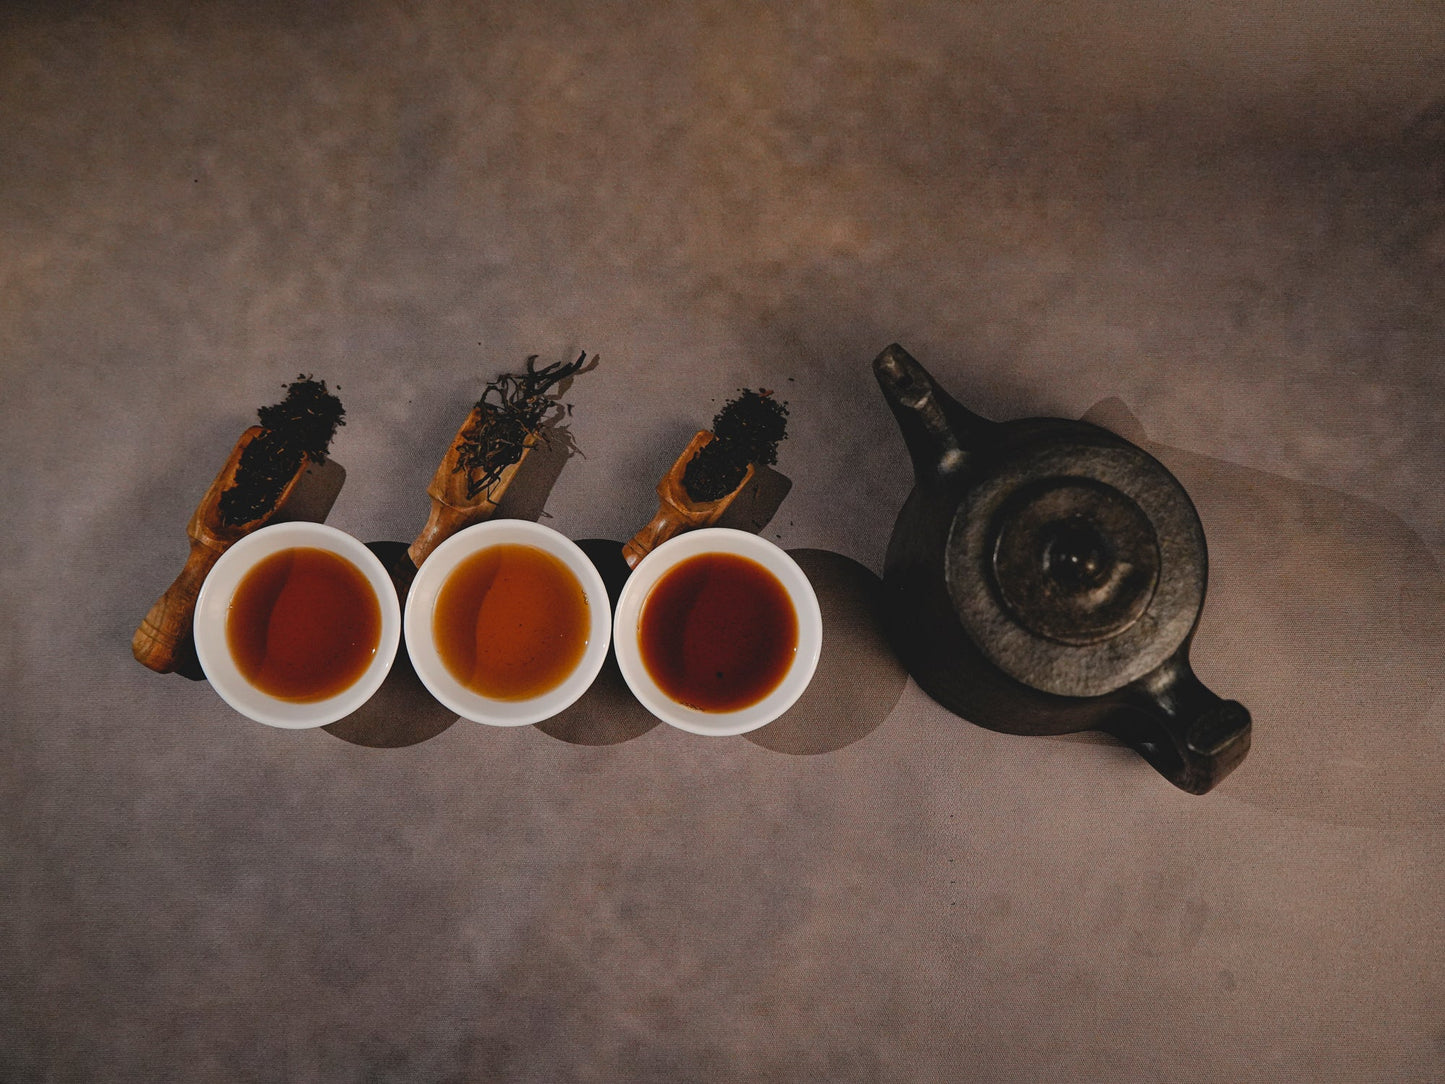 Orthodox Tea